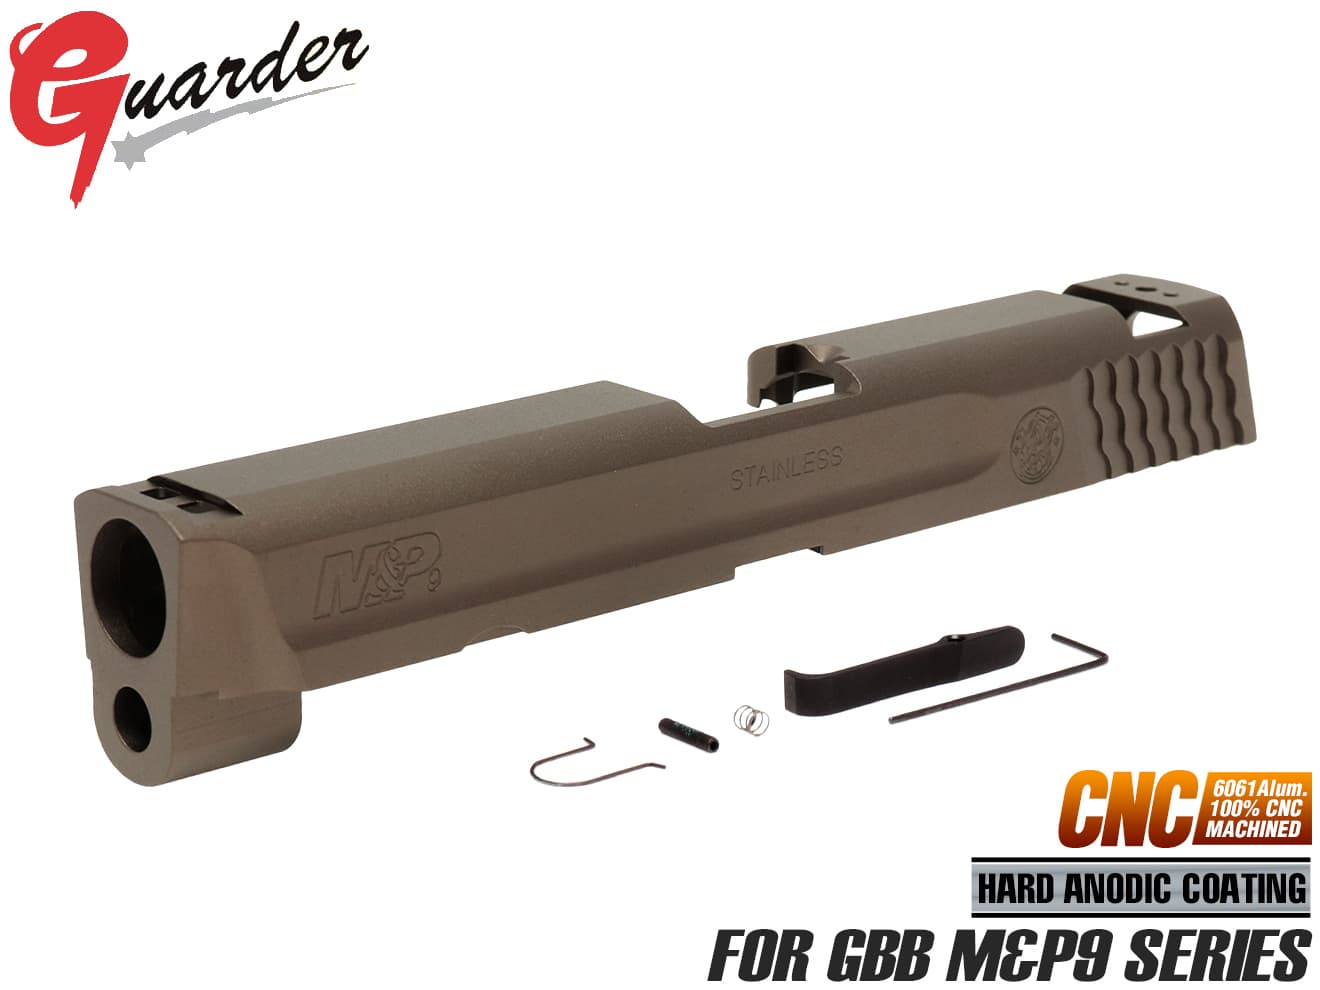 MP9-11(BK) GUARDER スチール スレッドアウターバレル 9mm